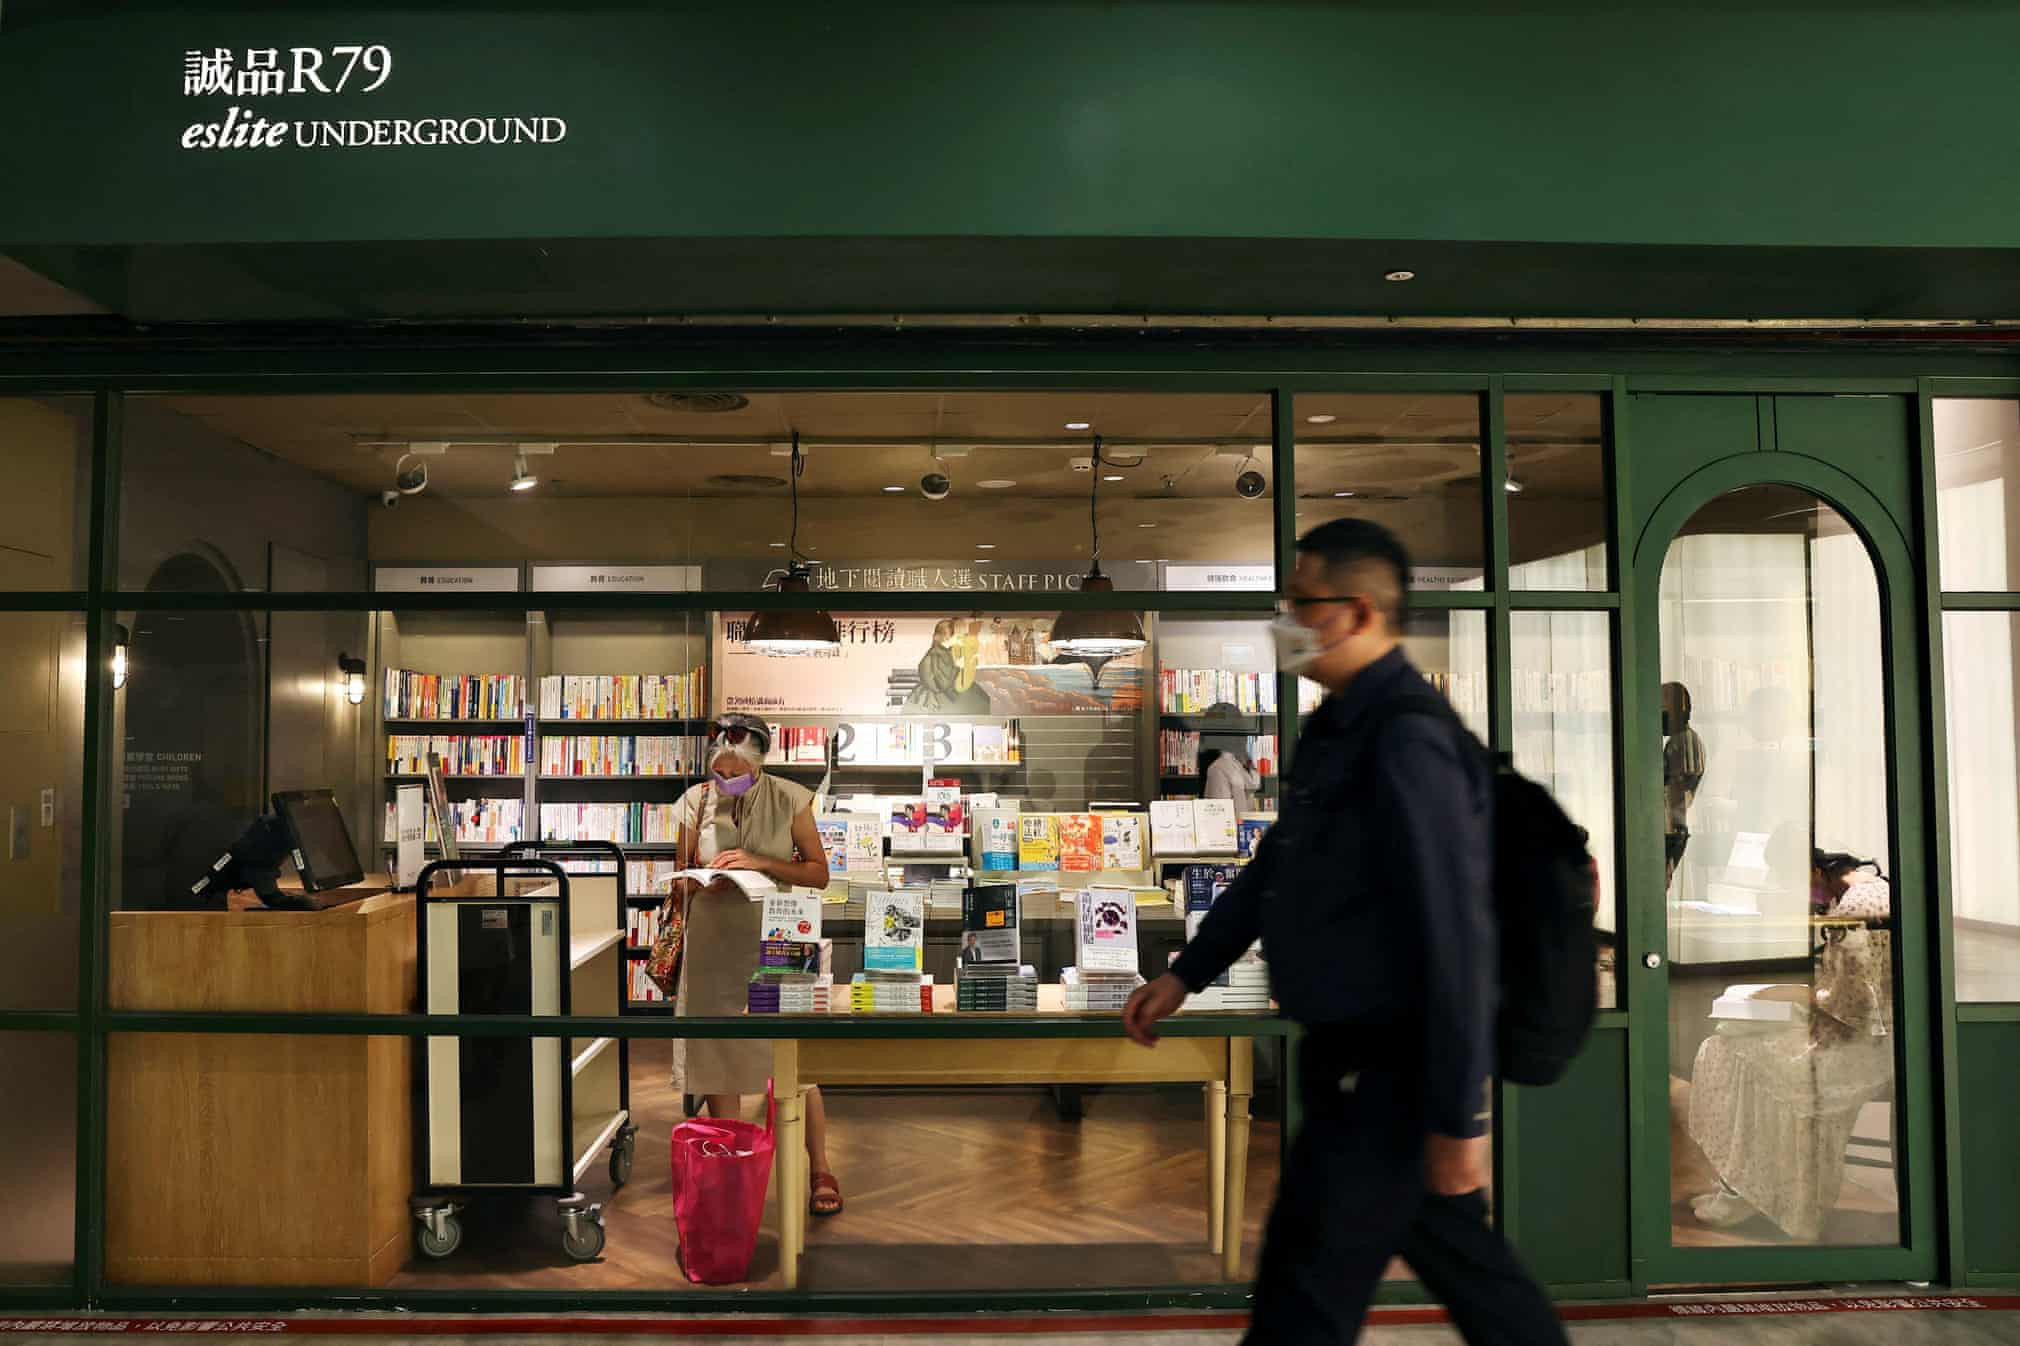 Một cửa hàng sách thuộc trung tâm thương mại ngầm. Đây cũng là một cơ sở trú ẩn được chỉ định. Ảnh: Reuters